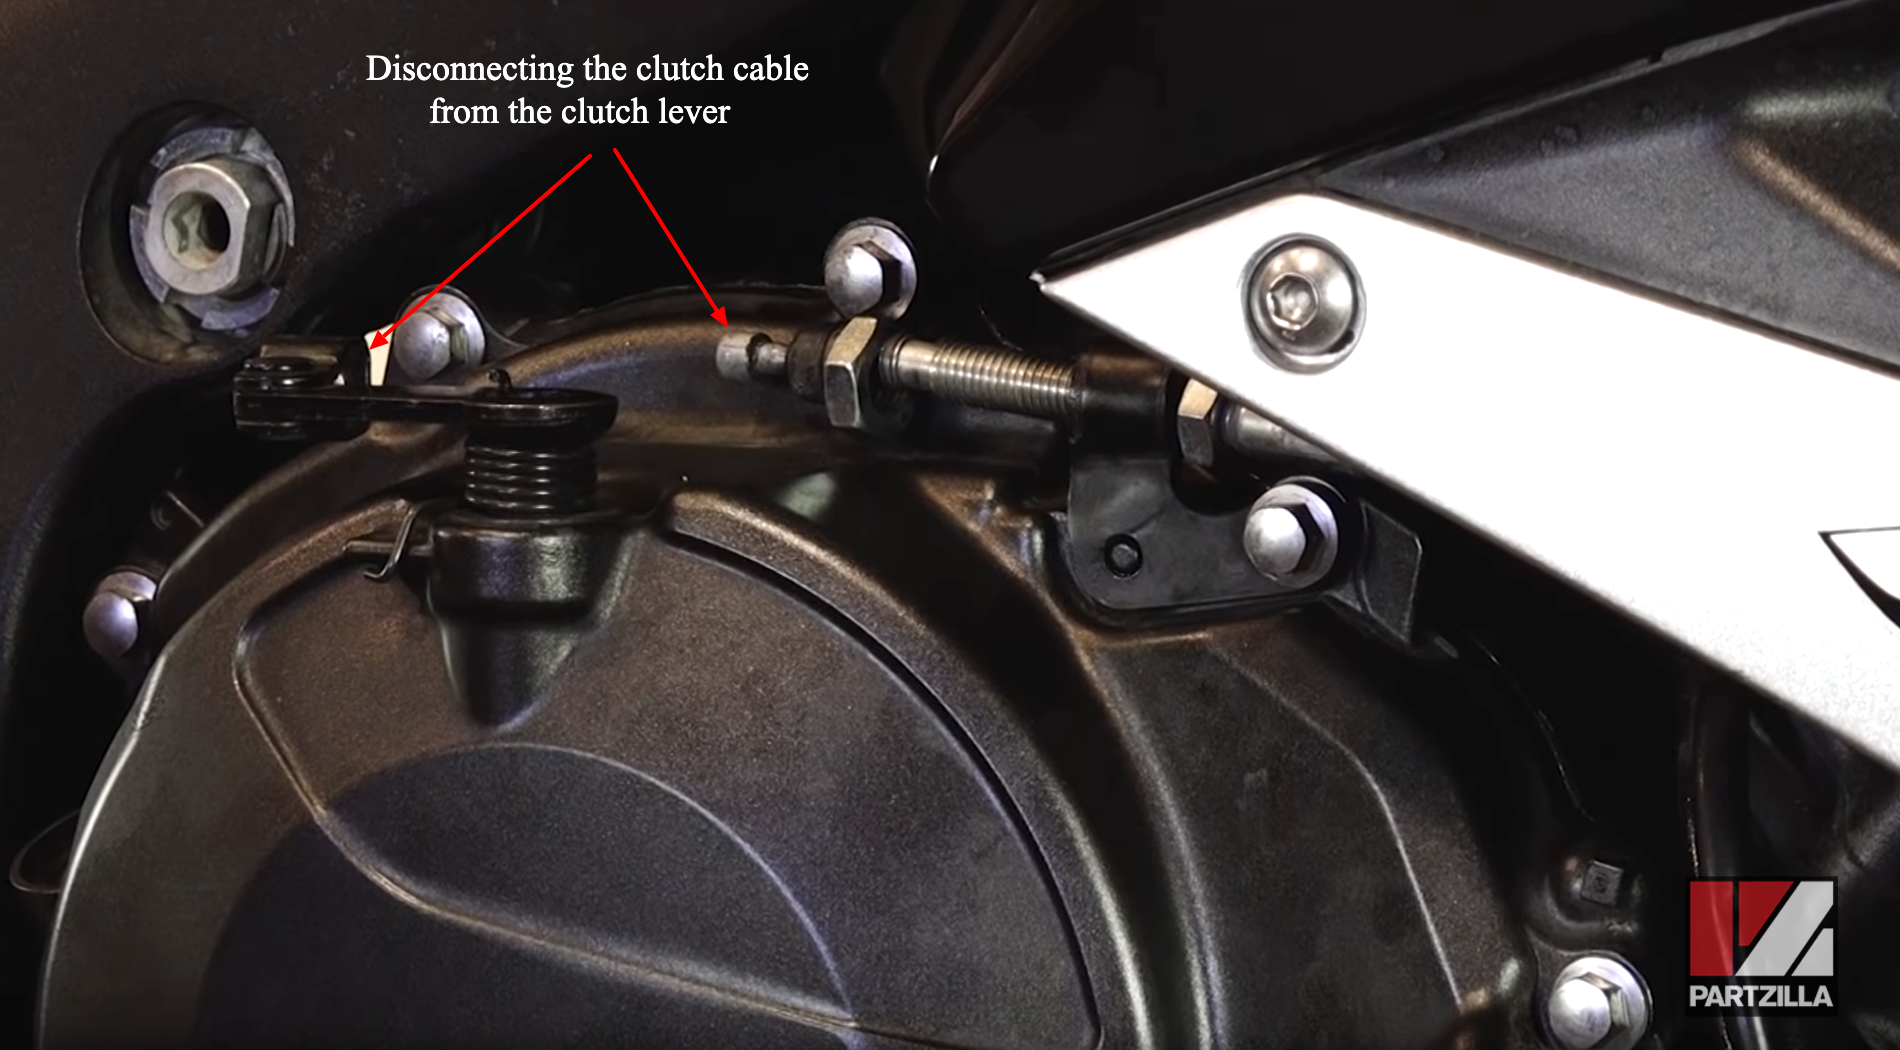 Honda CBR600 clutch rebuild lever